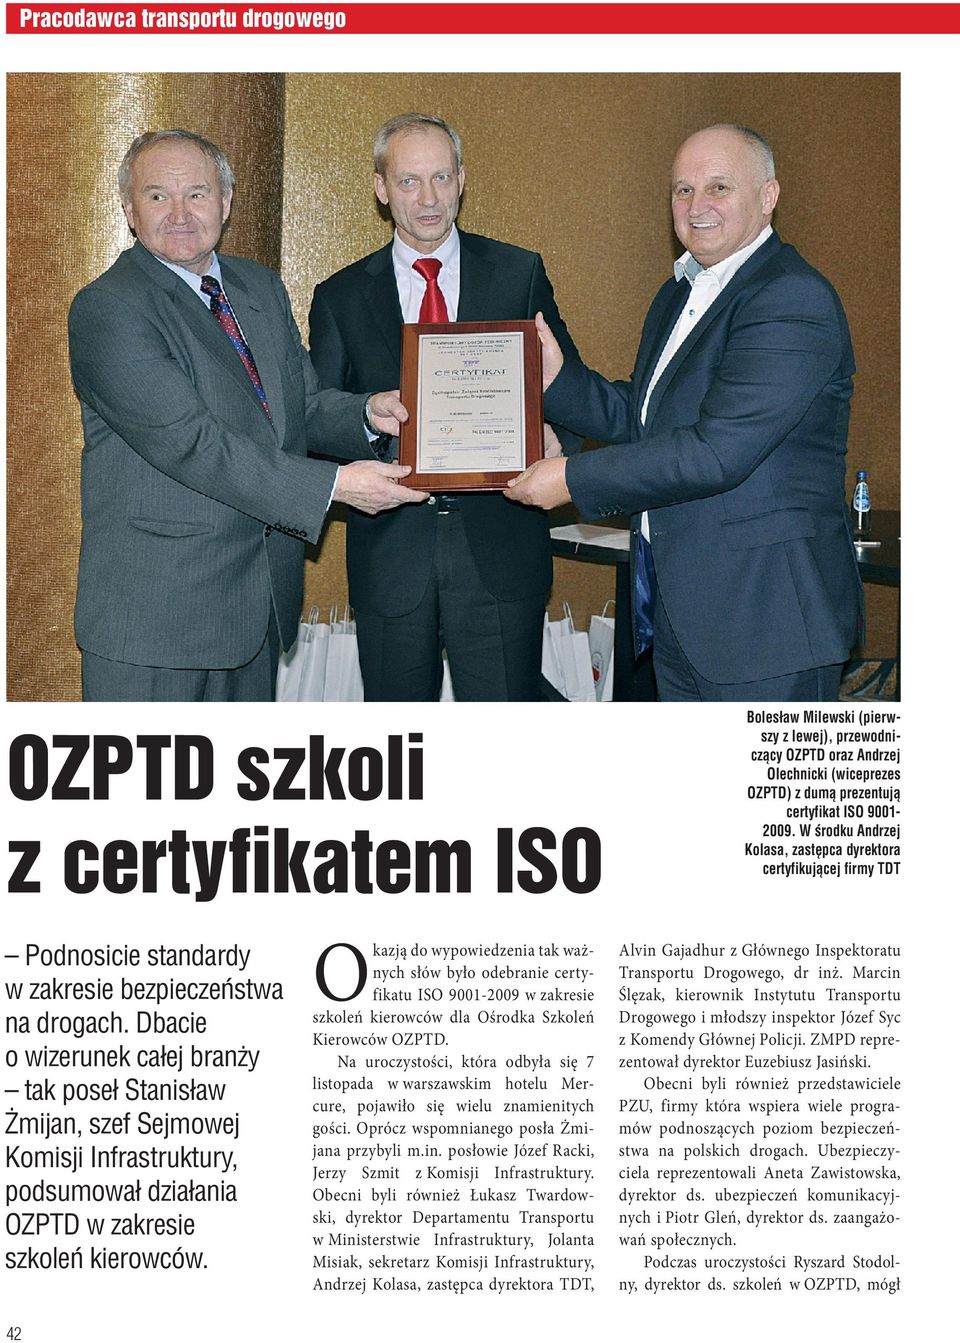 Dbacie o wizerunek całej branży tak poseł Stanisław Żmijan, szef Sejmowej Komisji Infrastruktury, podsumował działania OZPTD w zakresie szkoleń kierowców.